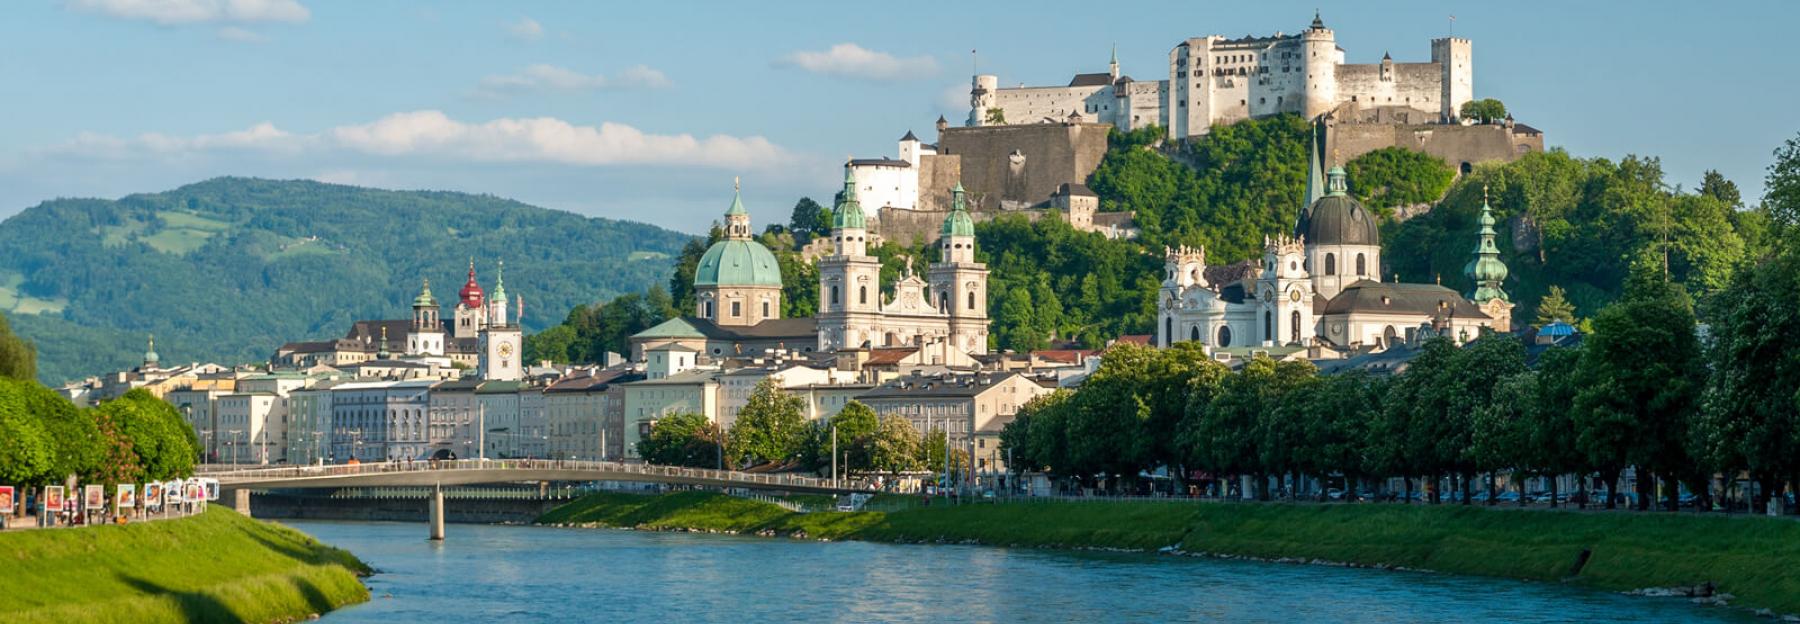 Salzburger Altstadt mit Blick auf die Festung Hohensalzburg